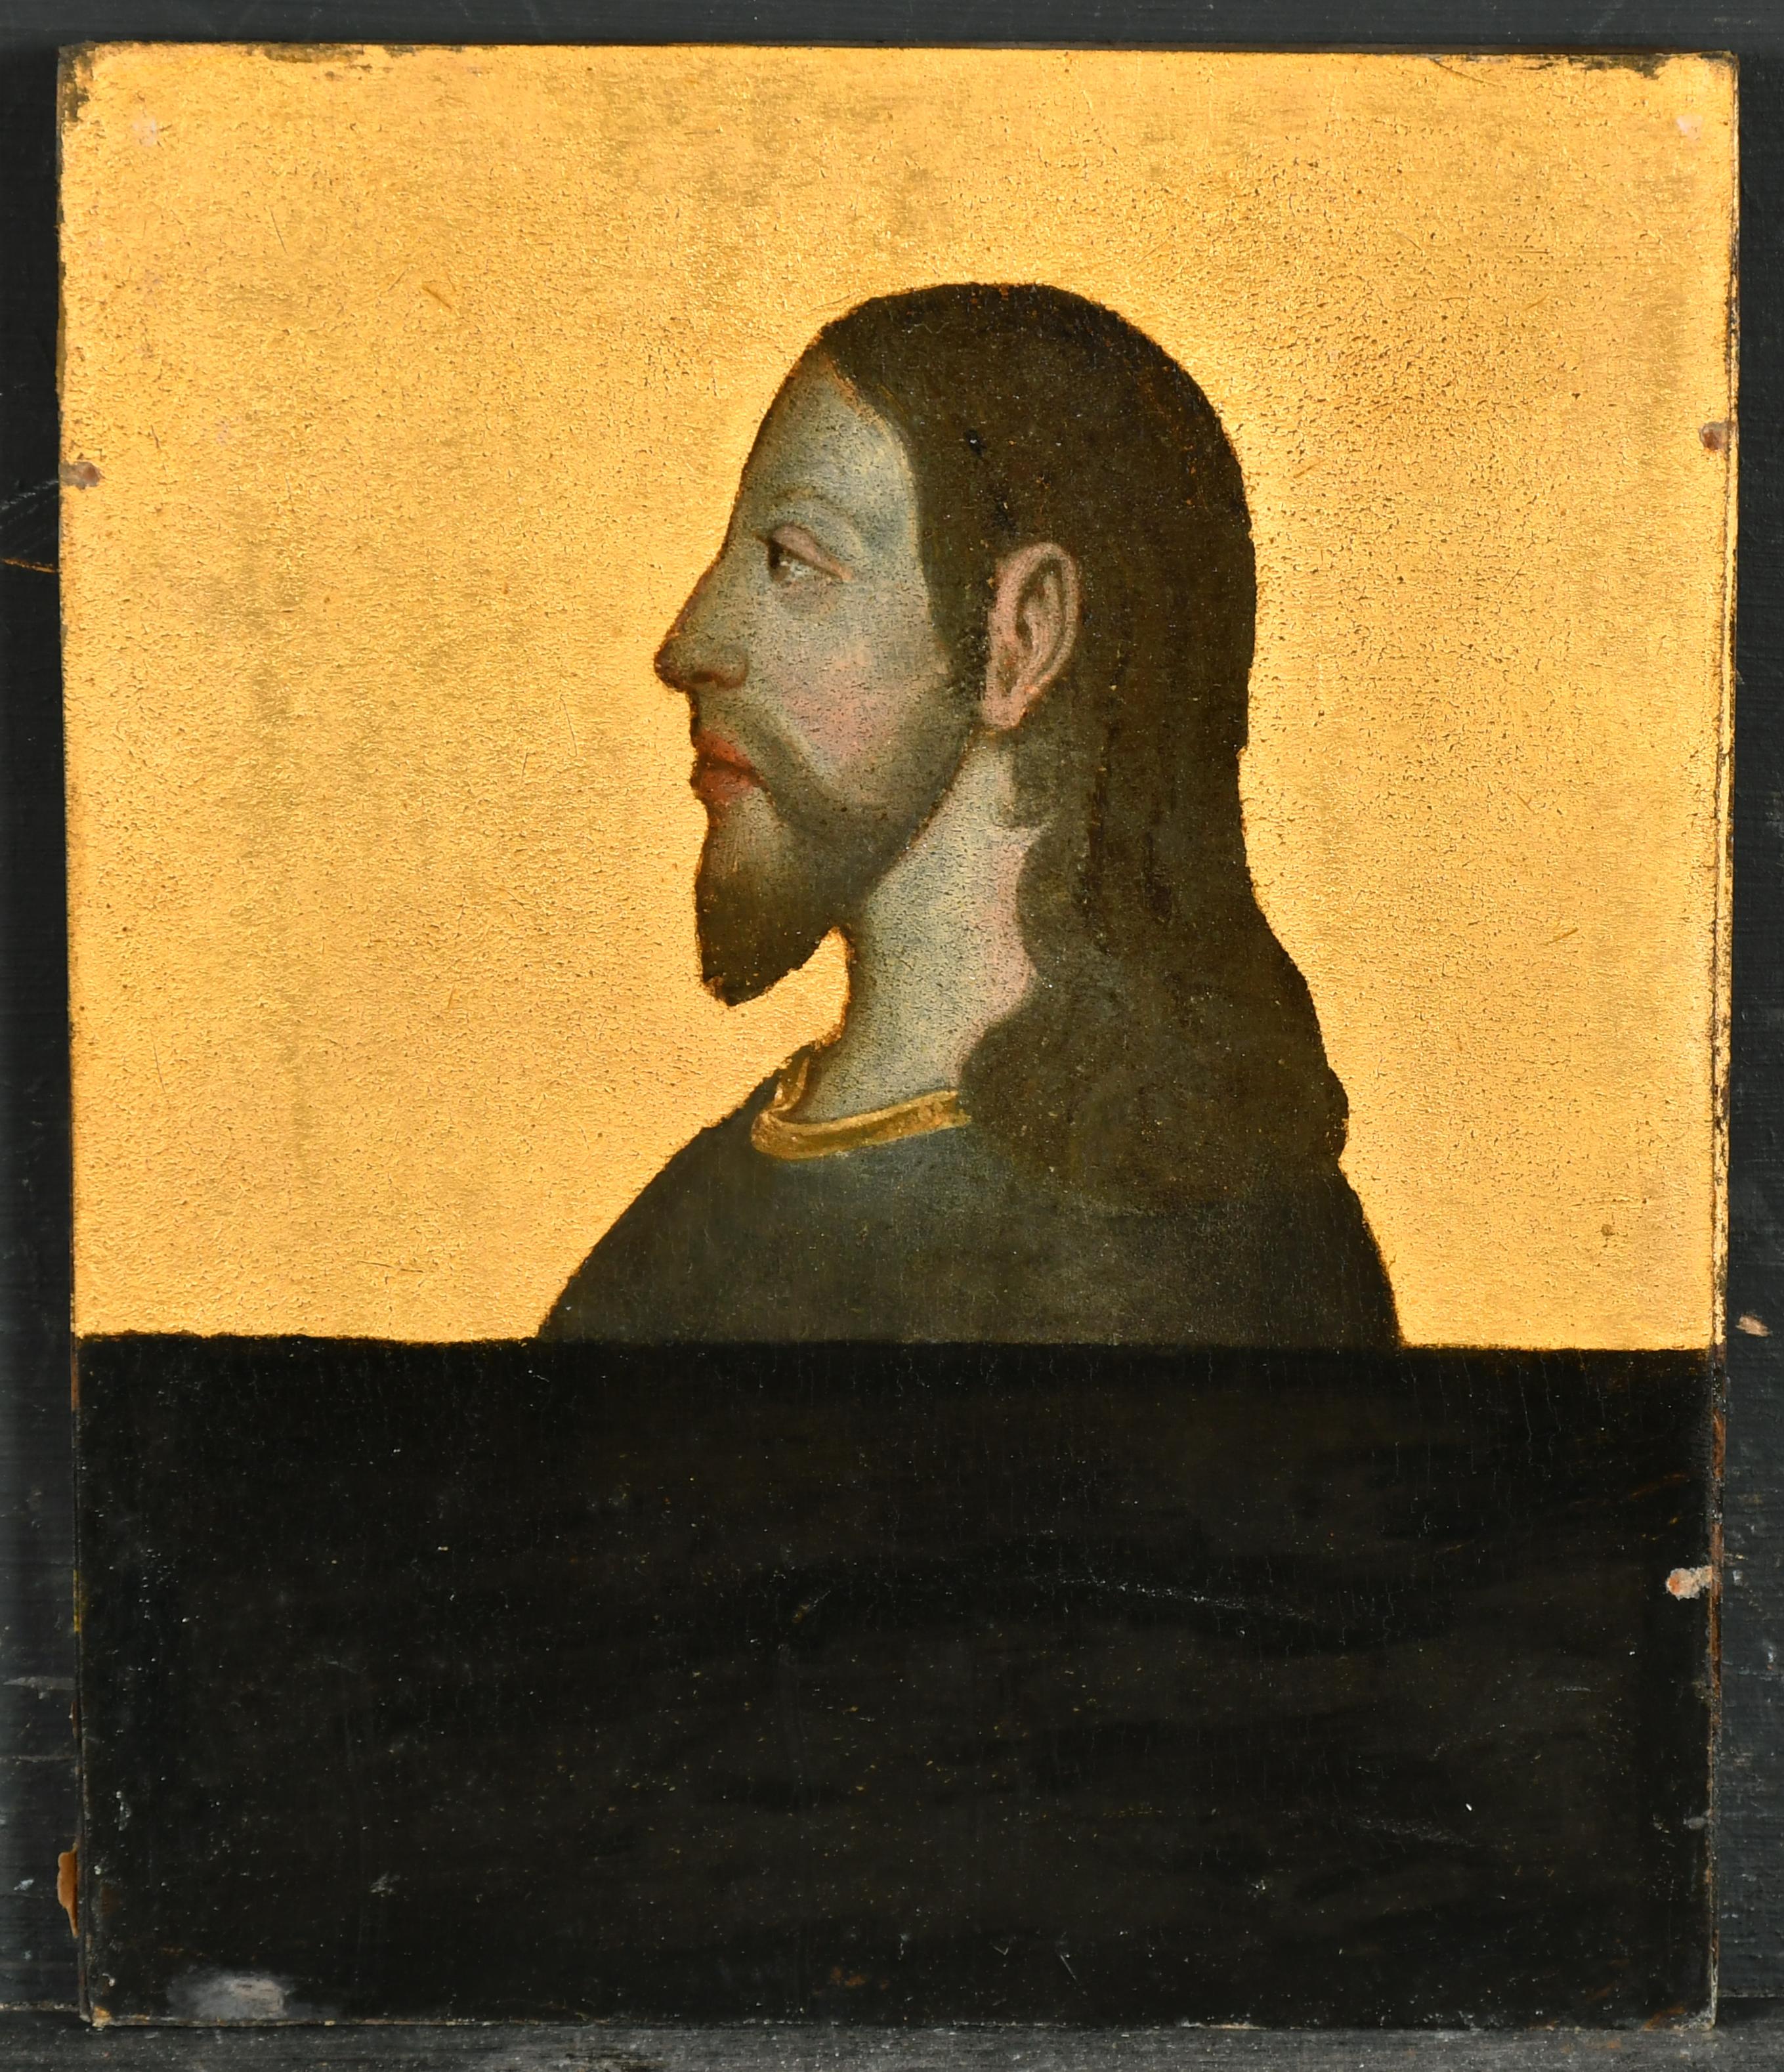 Kopfporträt im Renaissance-Stil von Christus, schönes antikes Ölgemälde – Painting von 19th century Dutch School